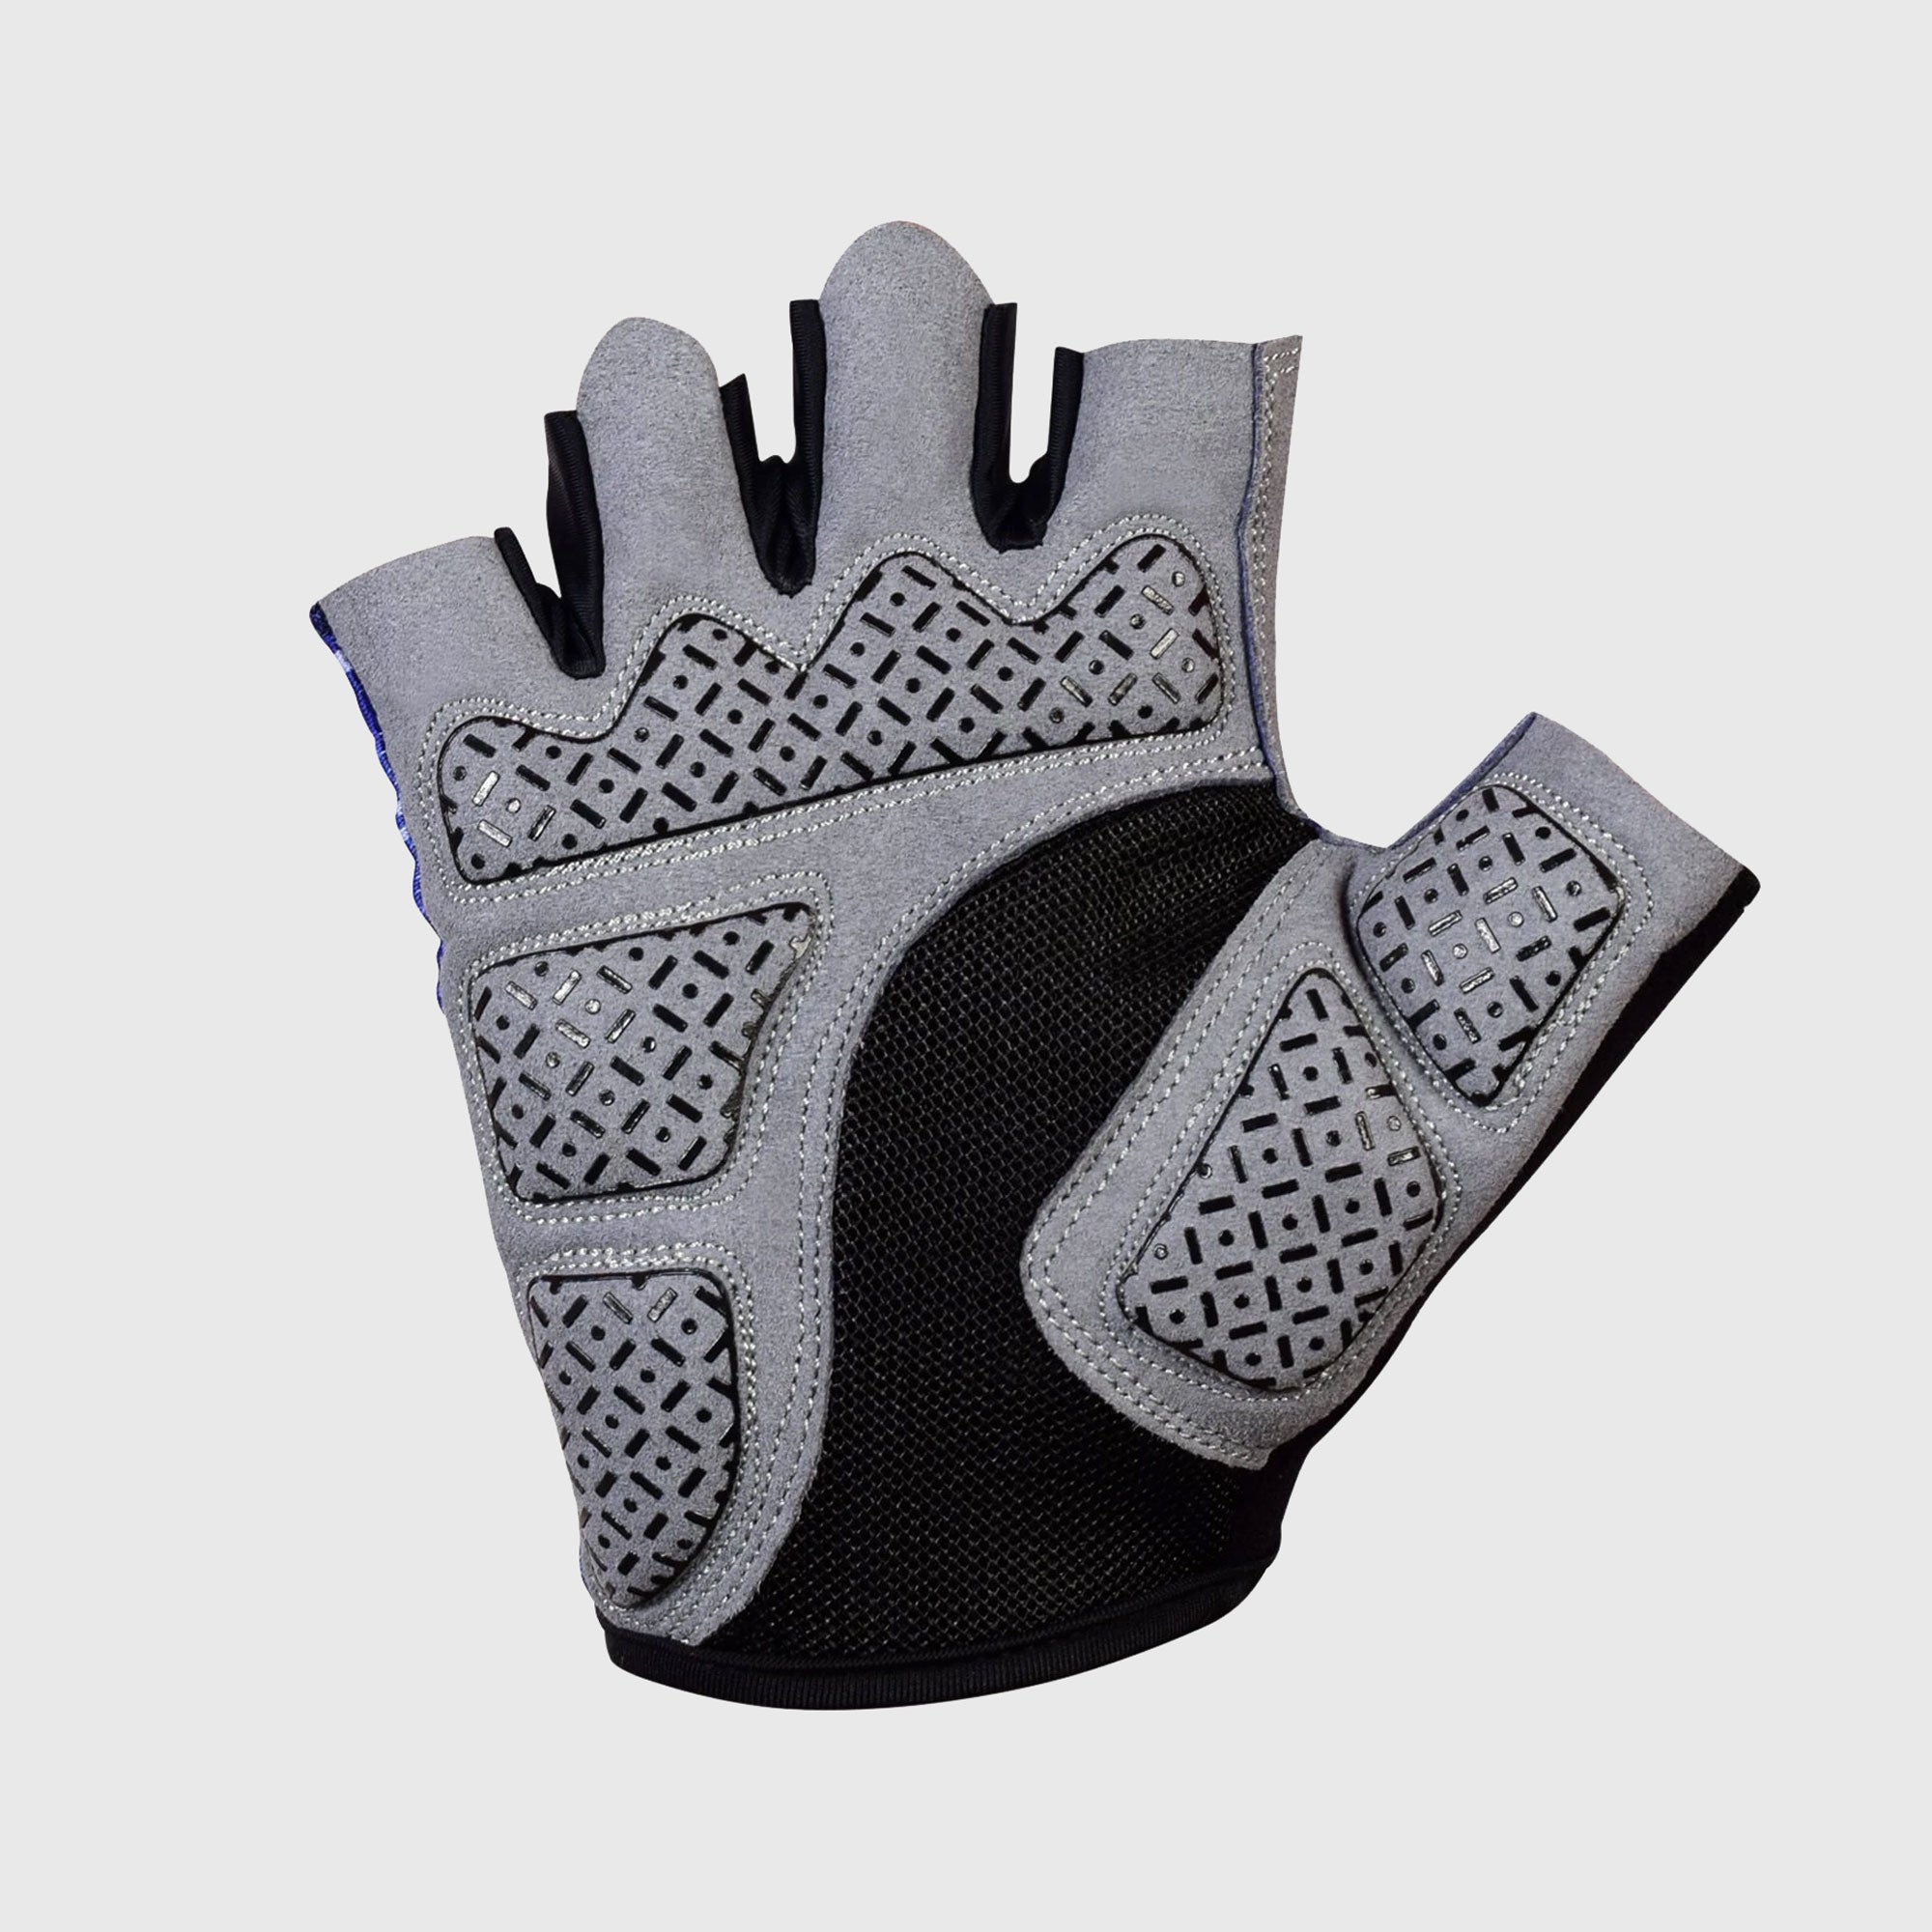 Fdx Black  Short Finger Cycling Gloves for Summer MTB Road Bike fingerless, anti slip & Breathable - All Day